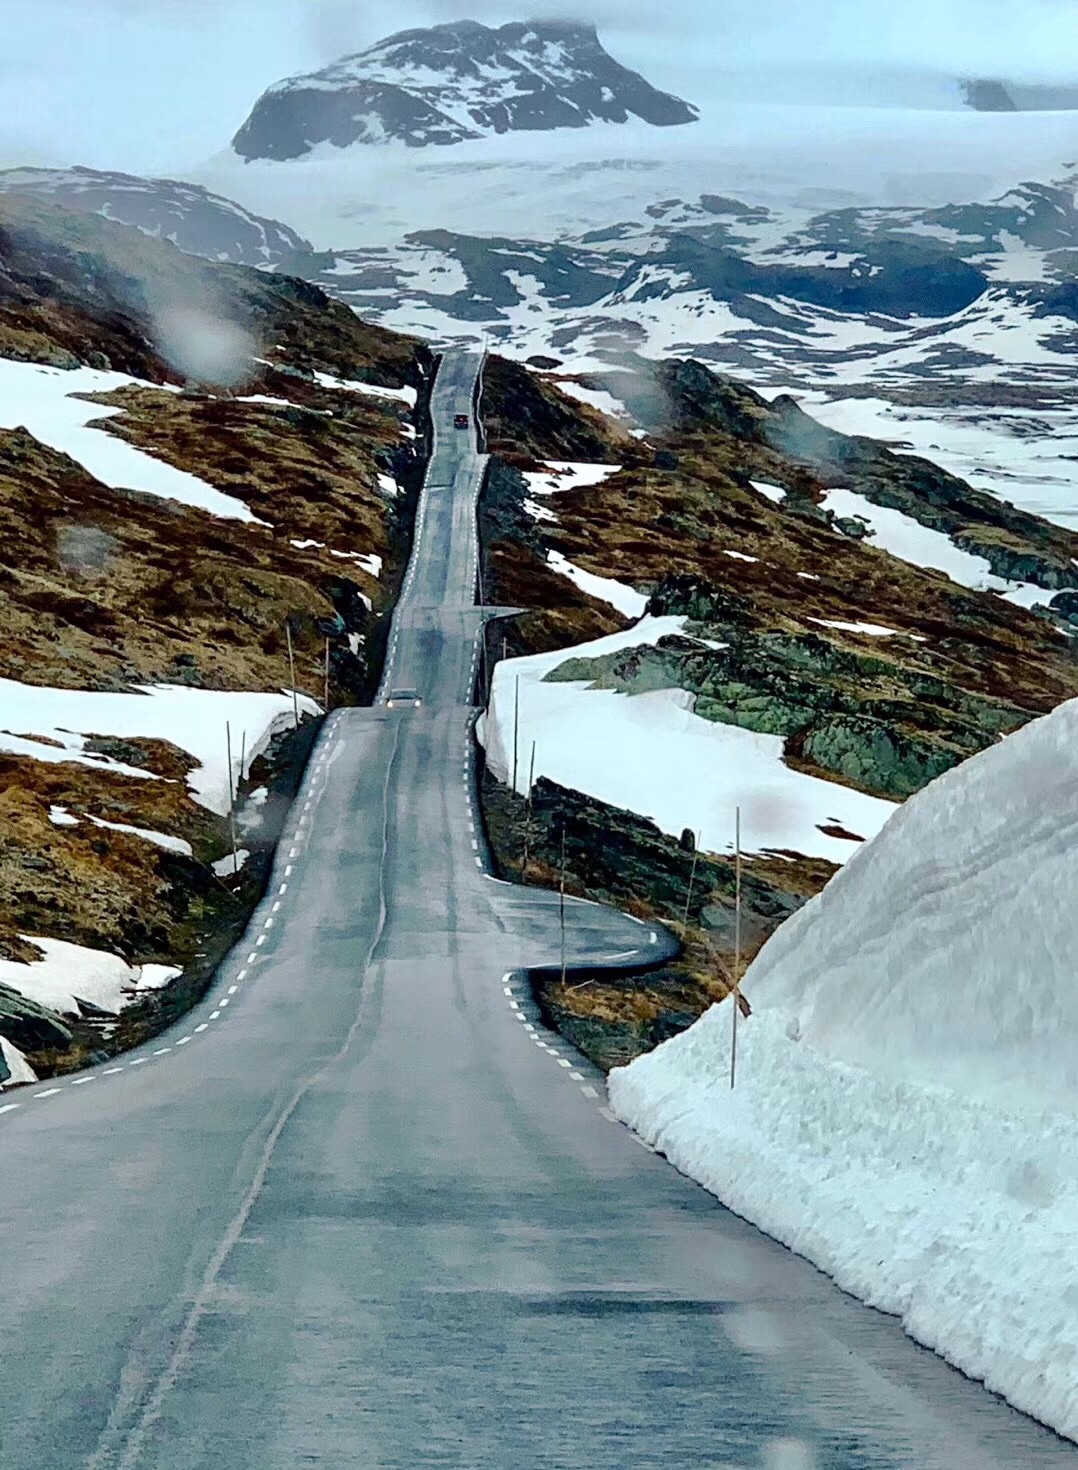 翻越跌宕起伏的挪威峡湾 叹一场冰河时代的地貌奇观